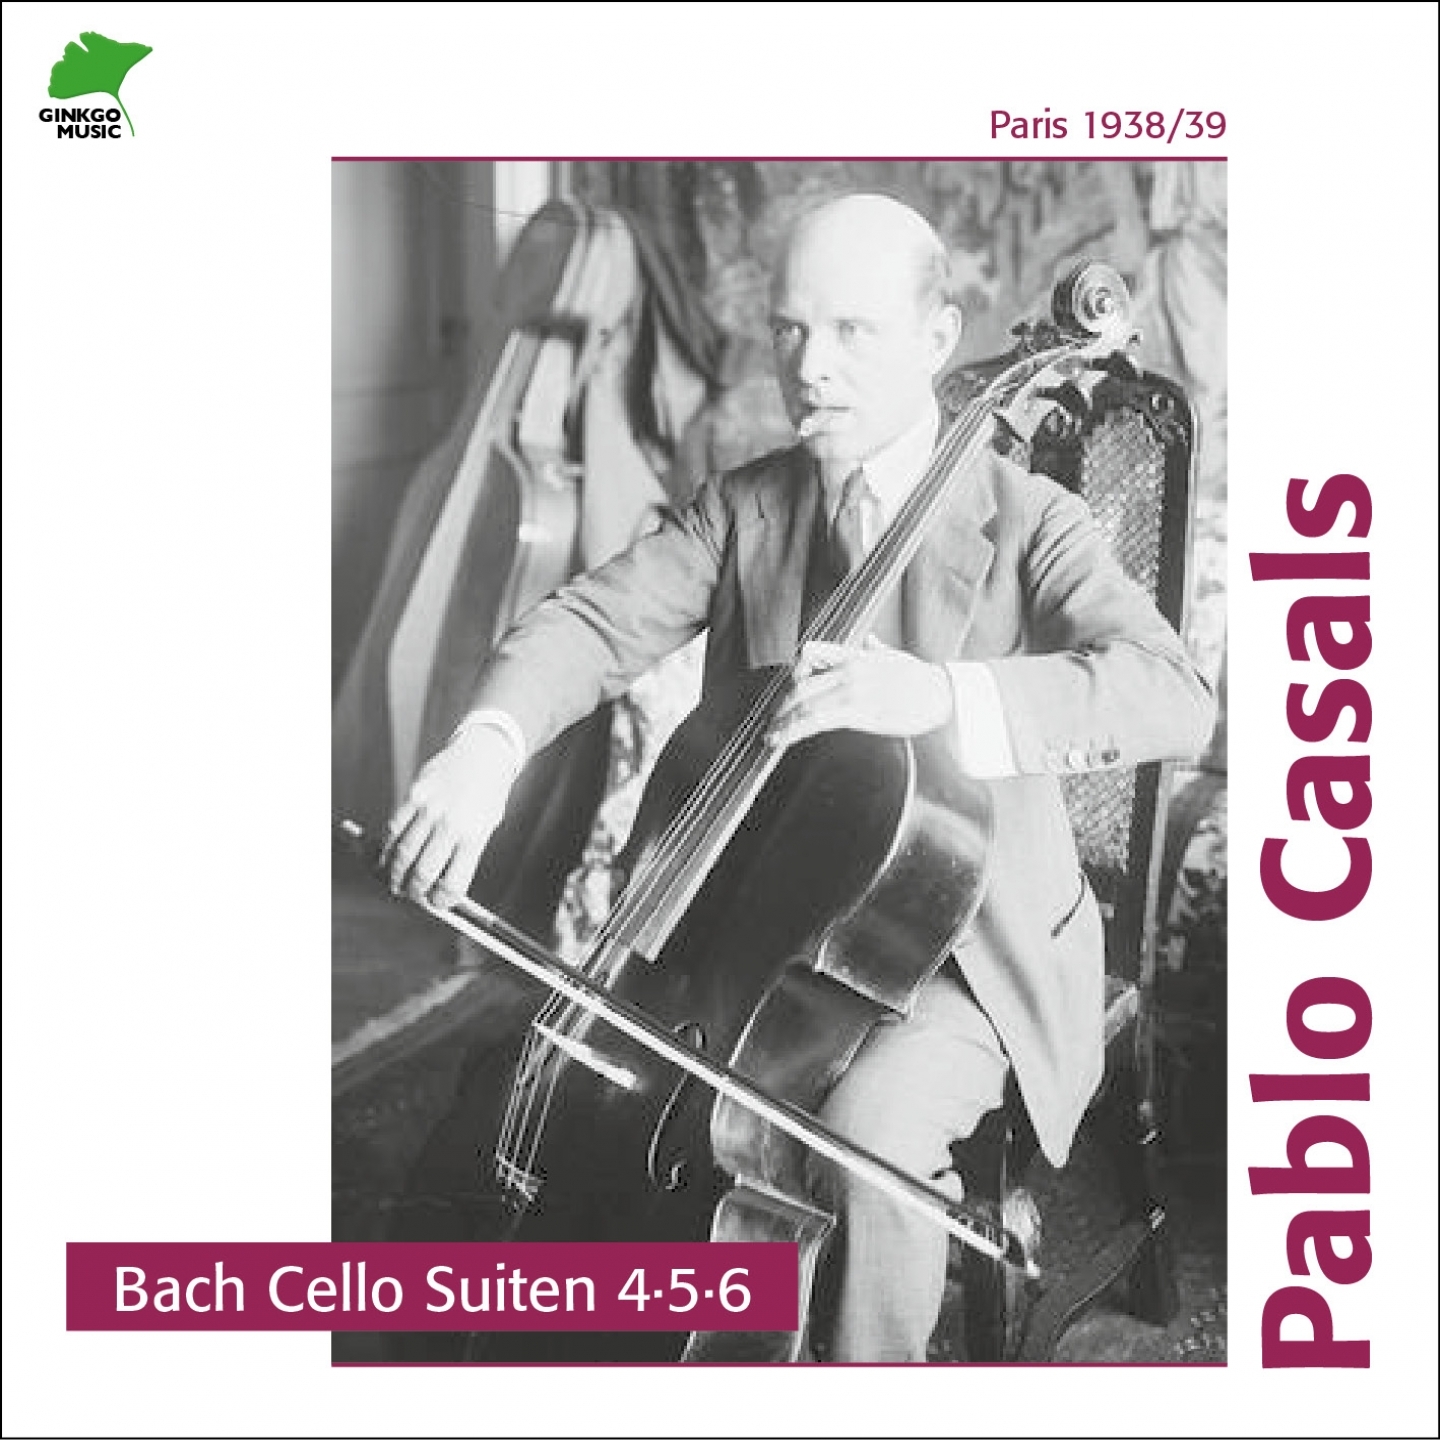 Cello Suite No. 6, in D Major, BWV 1012 Sarabande